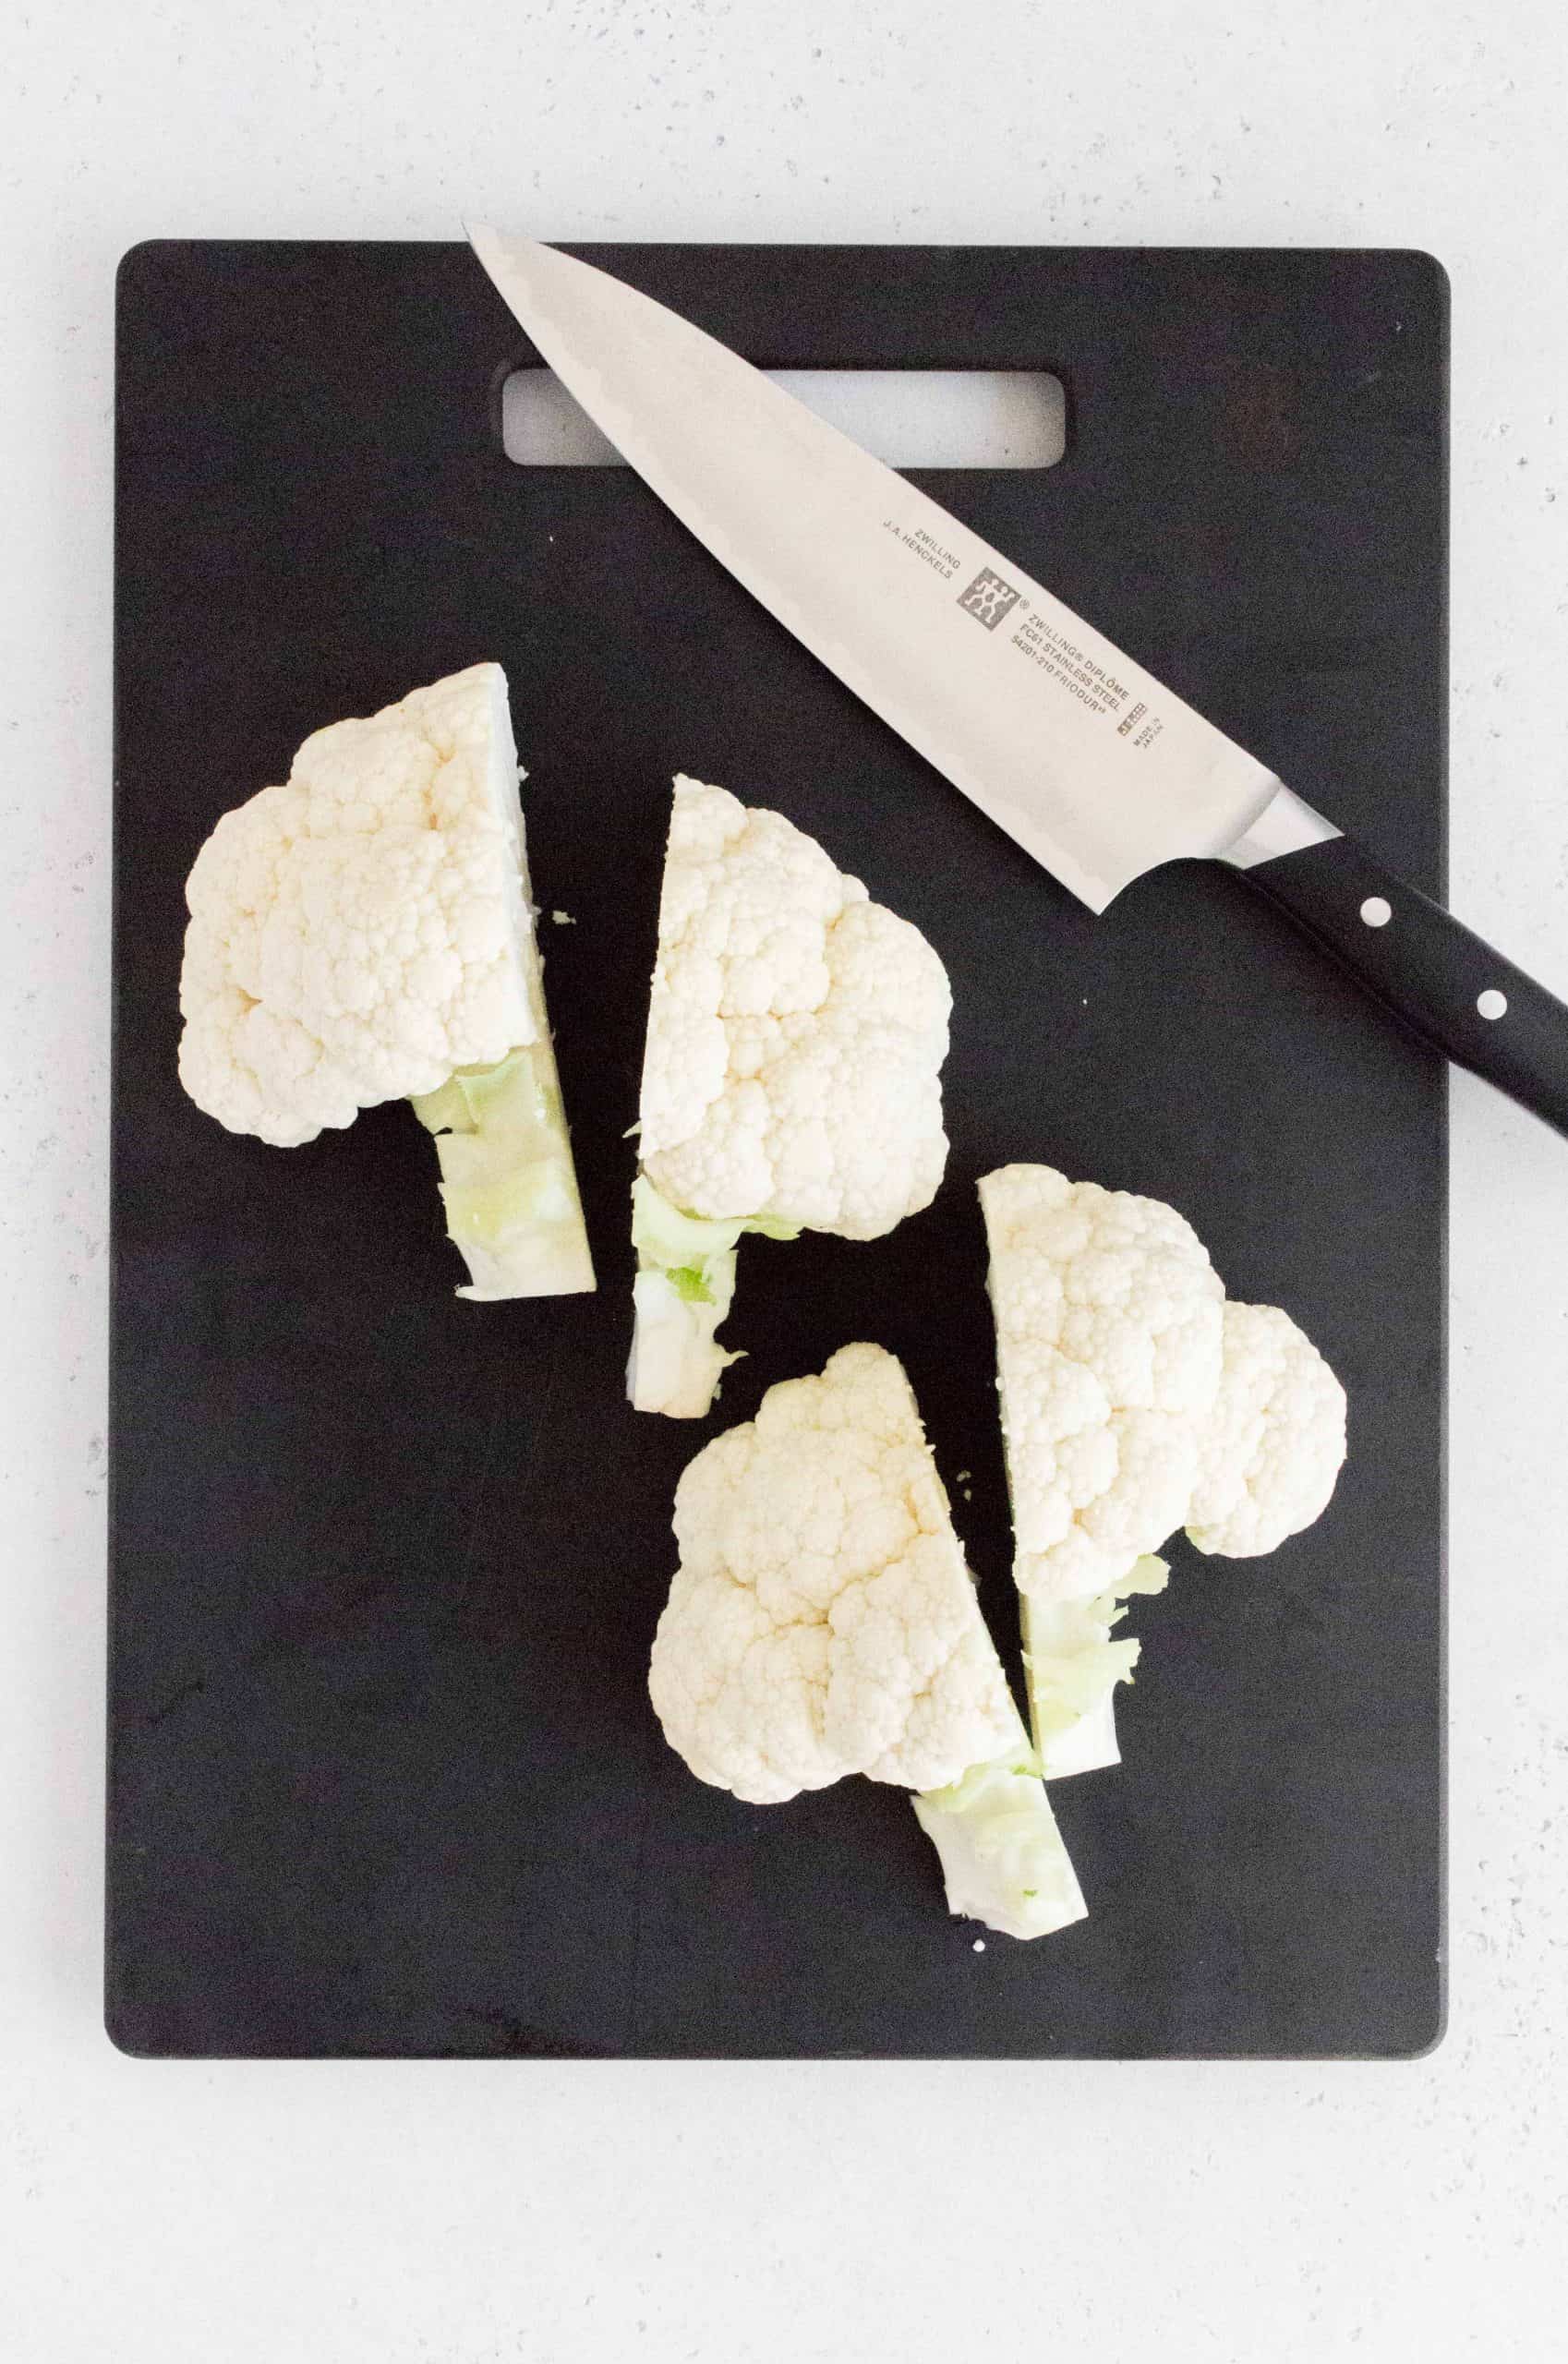 halves of cauliflower cut in half